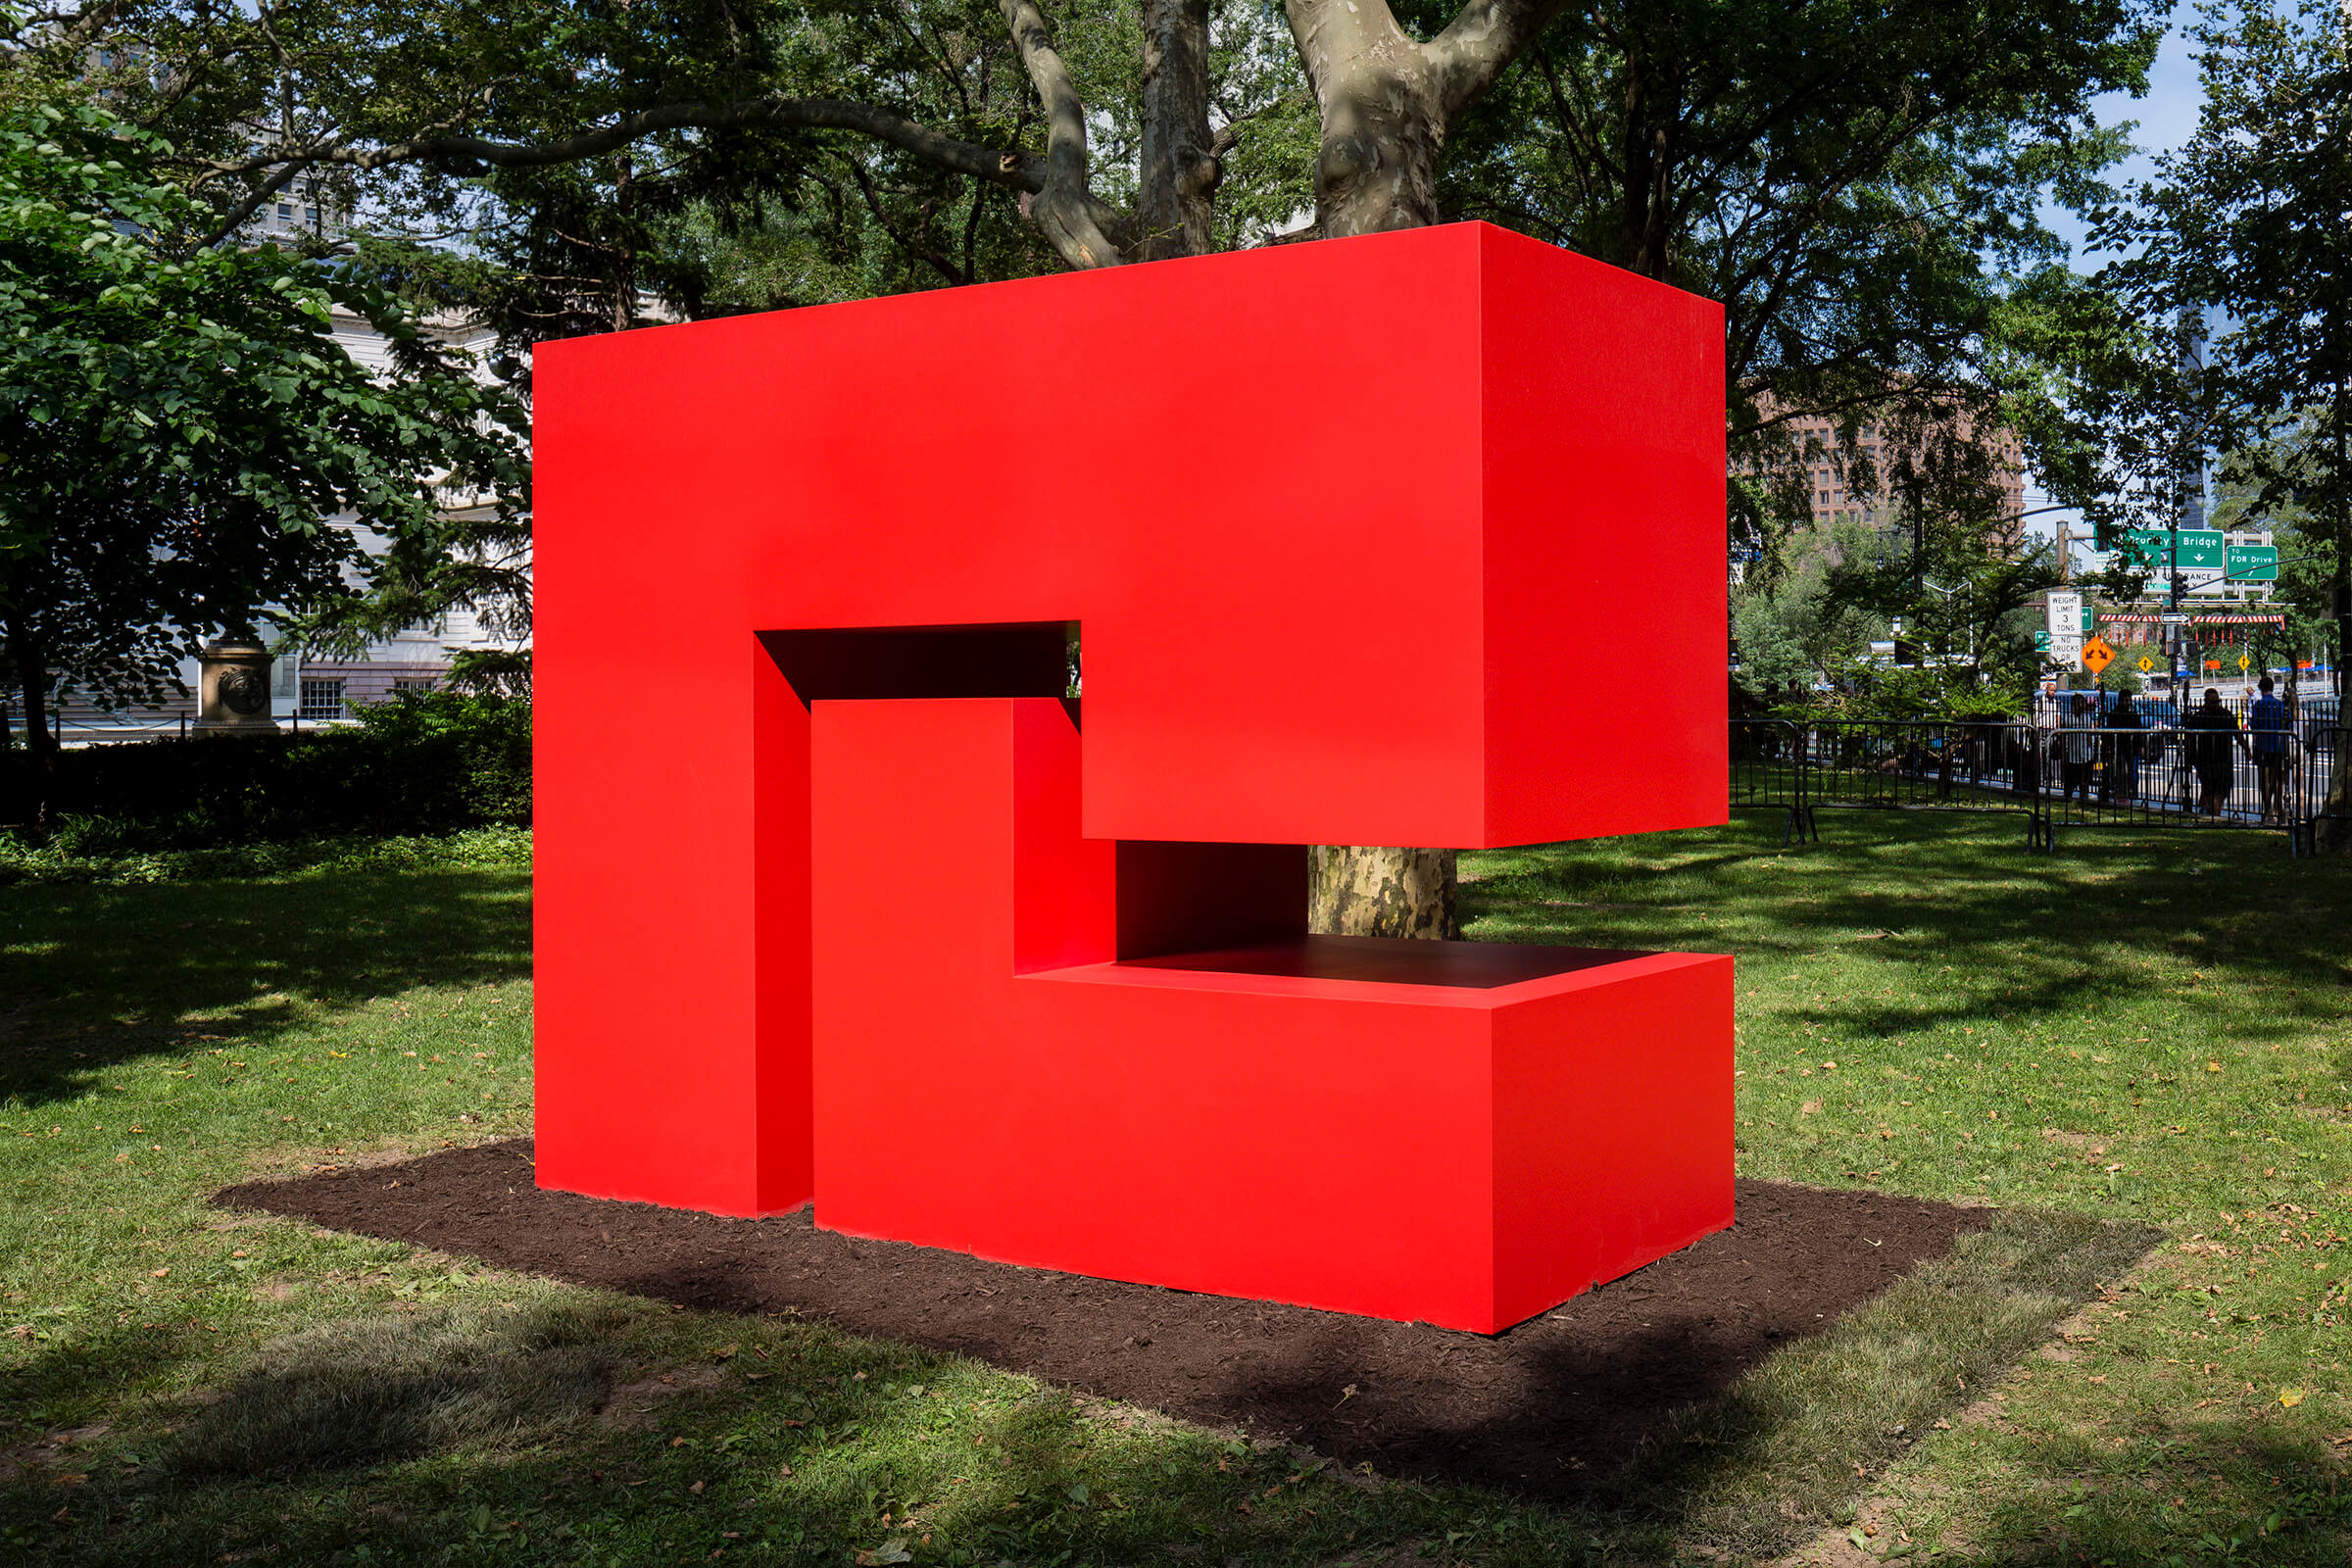 A red geometric statue by Carmen Herrera